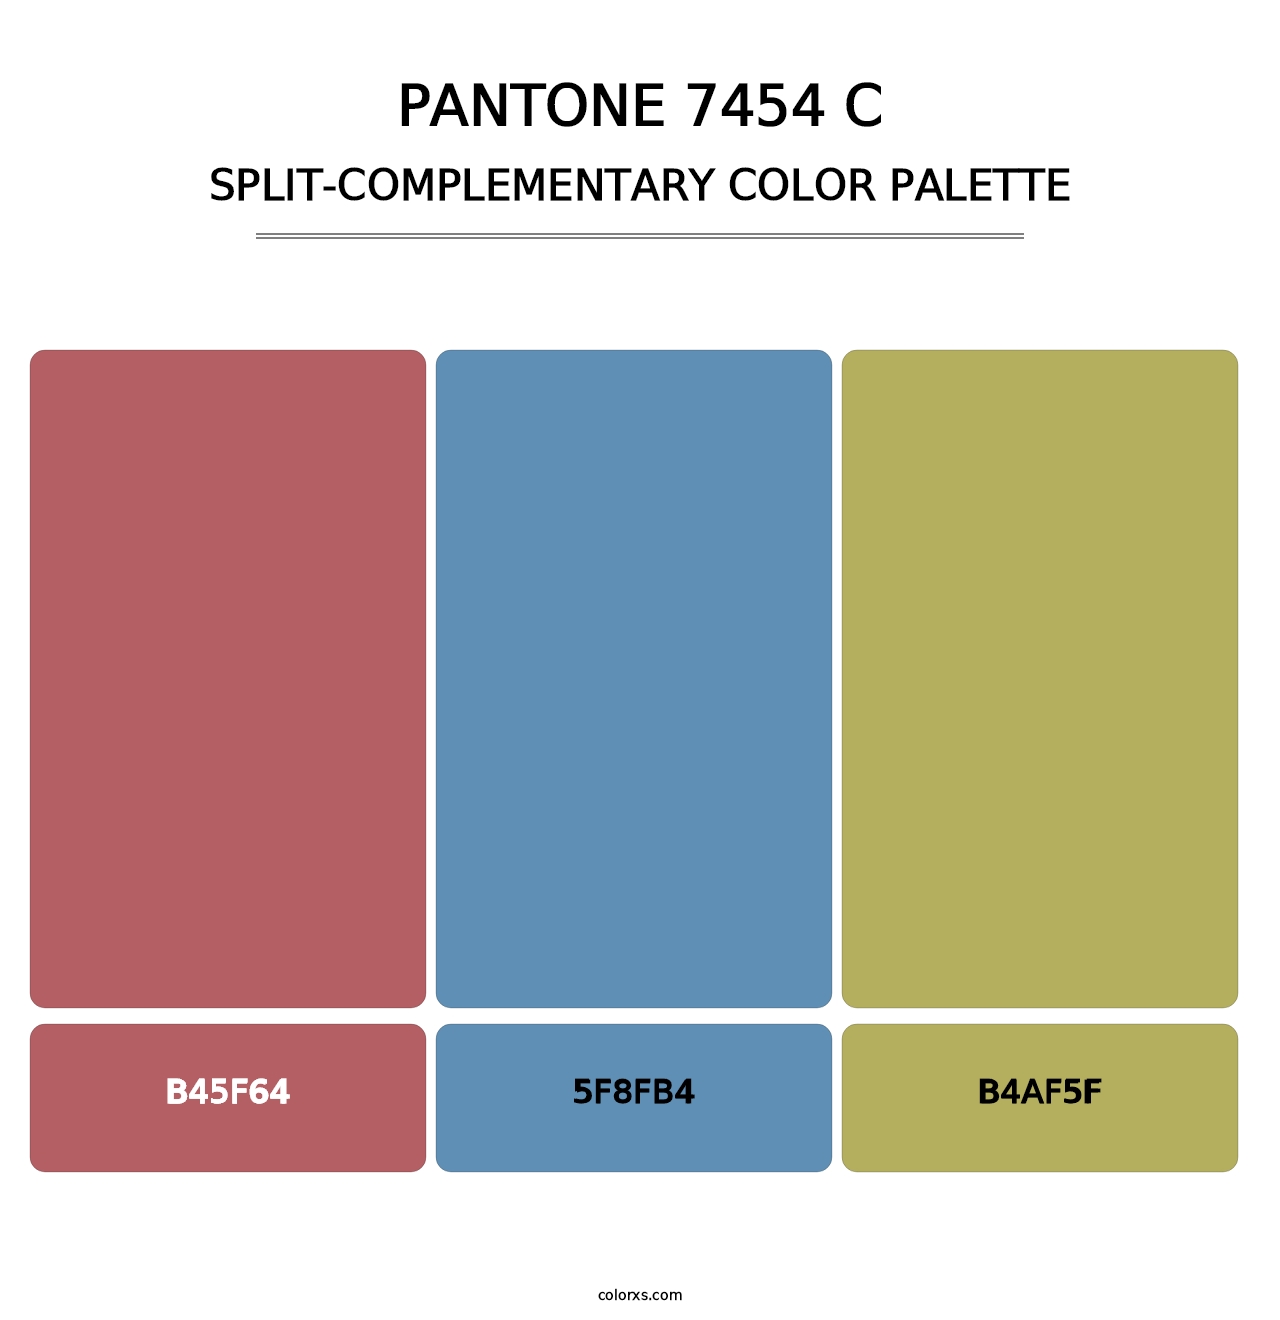 PANTONE 7454 C - Split-Complementary Color Palette